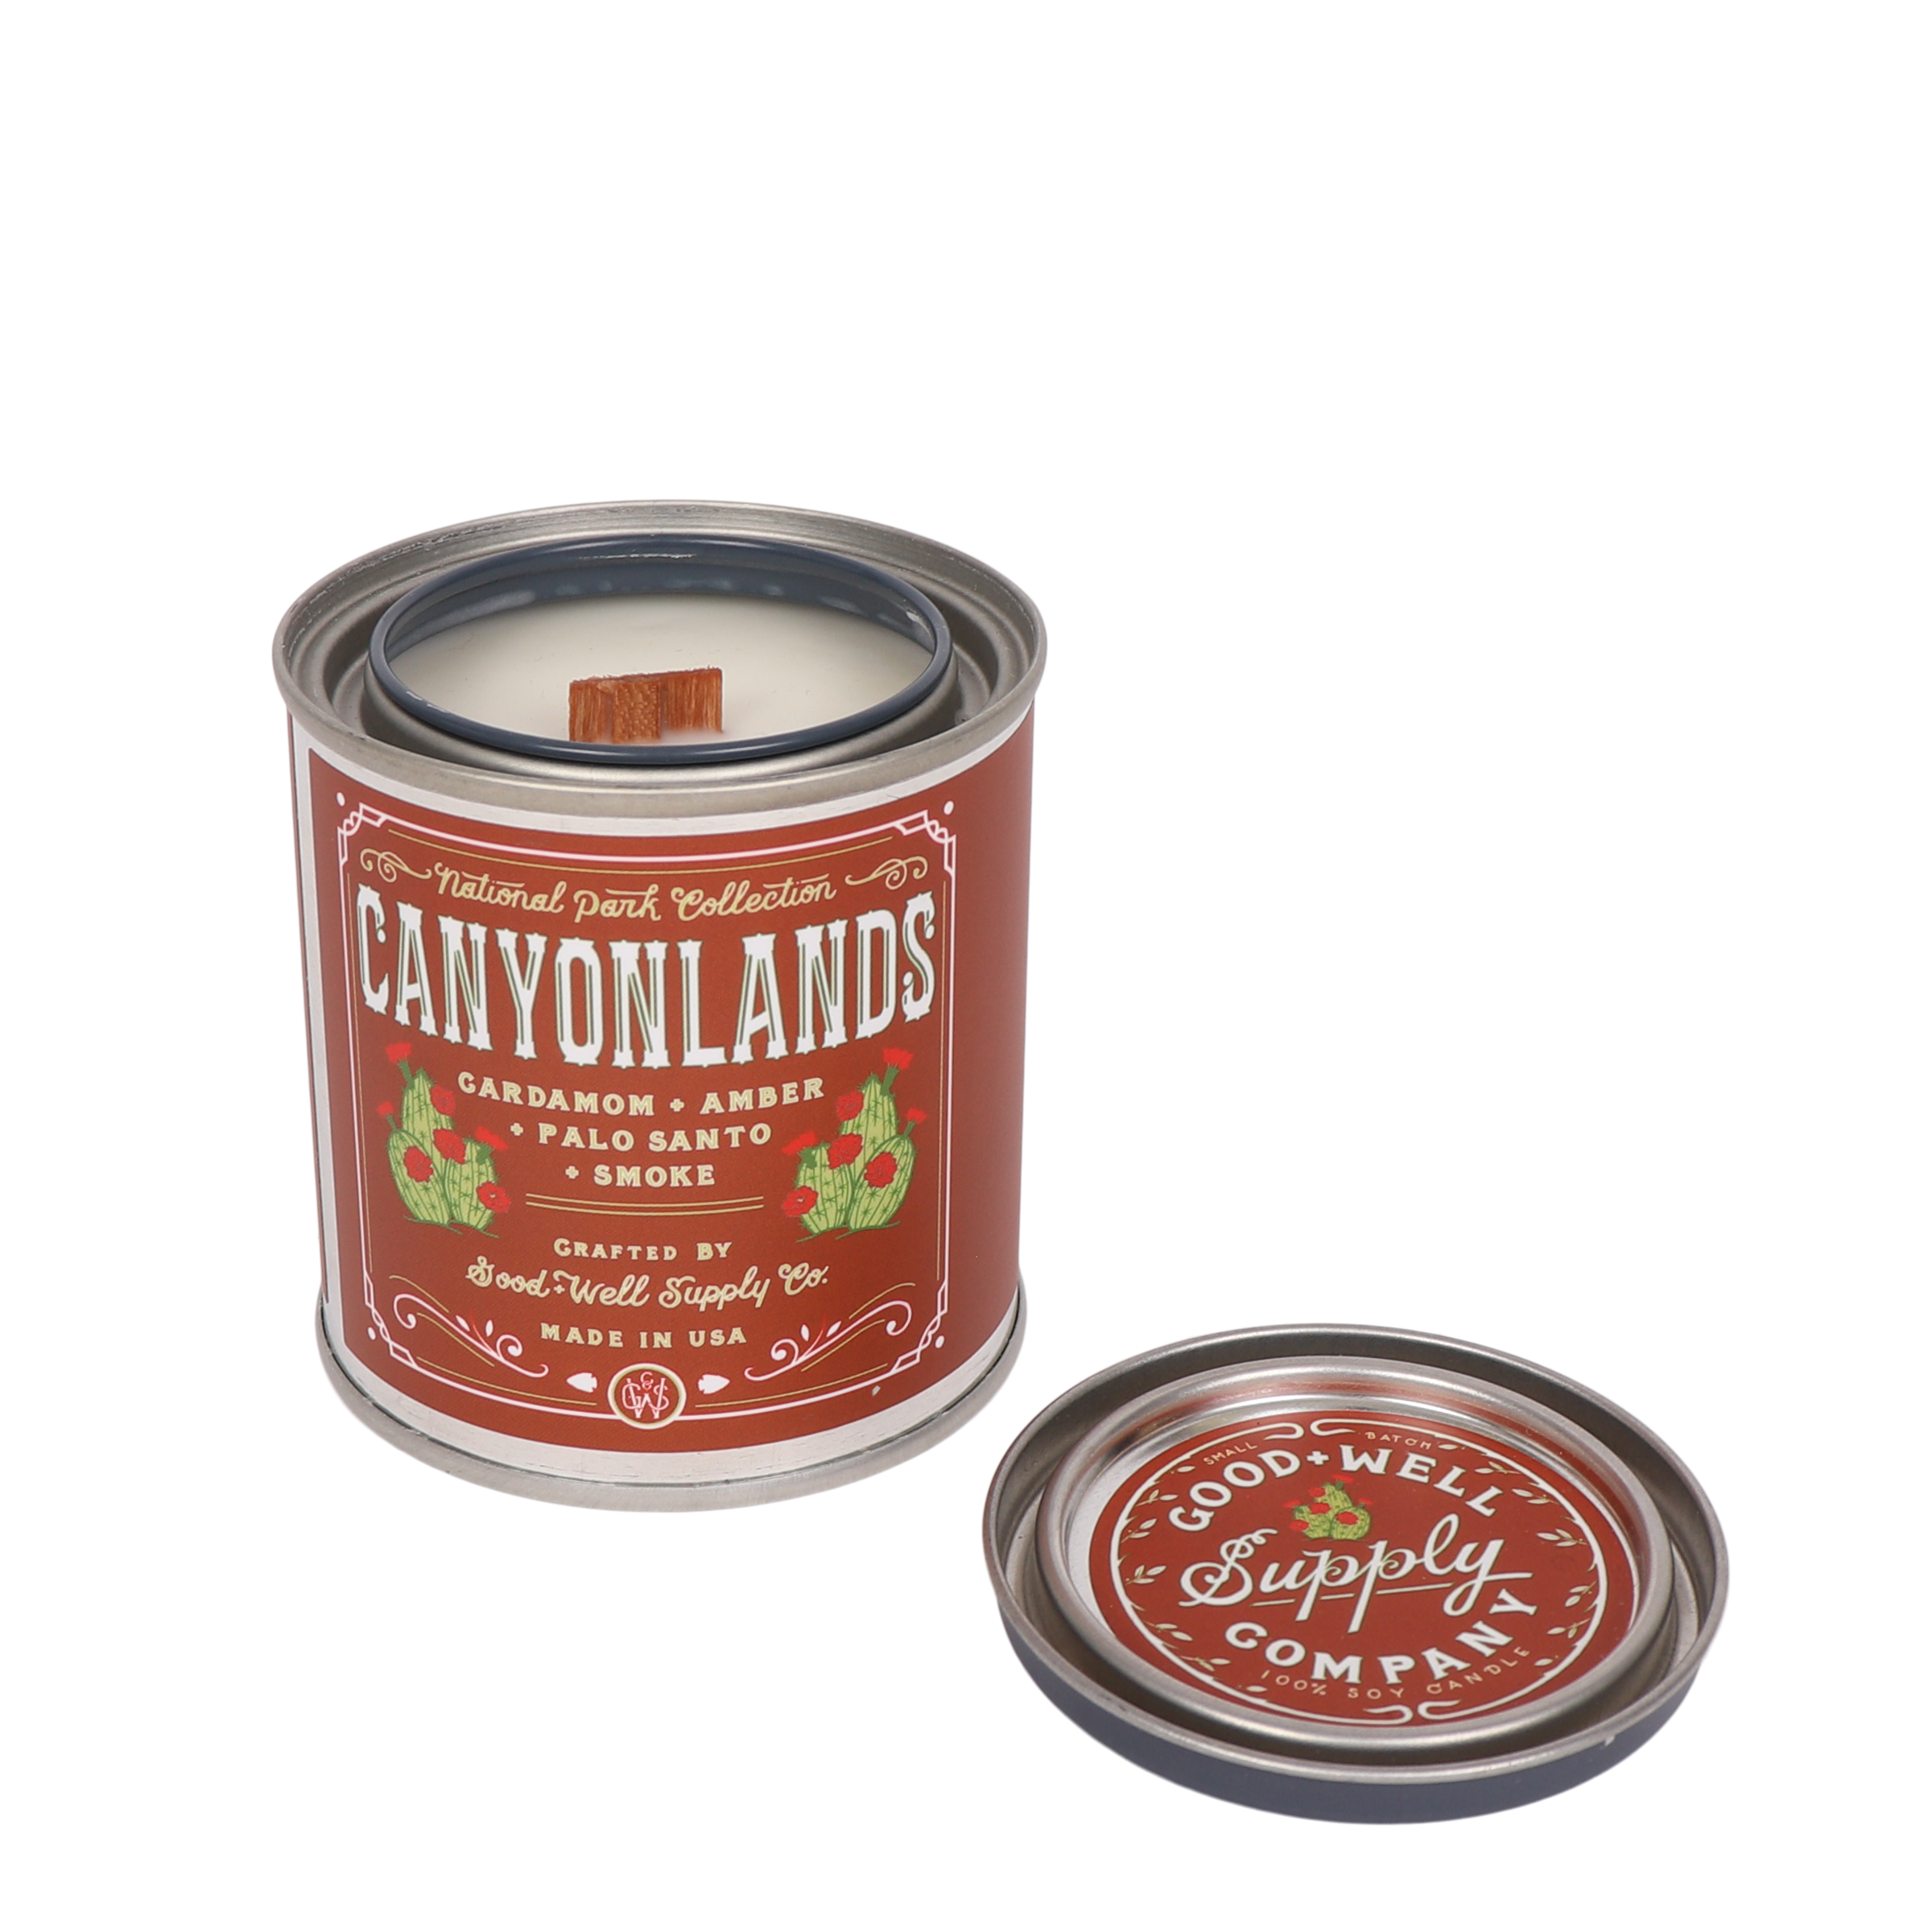 Canyonlands National Park Candle Tin